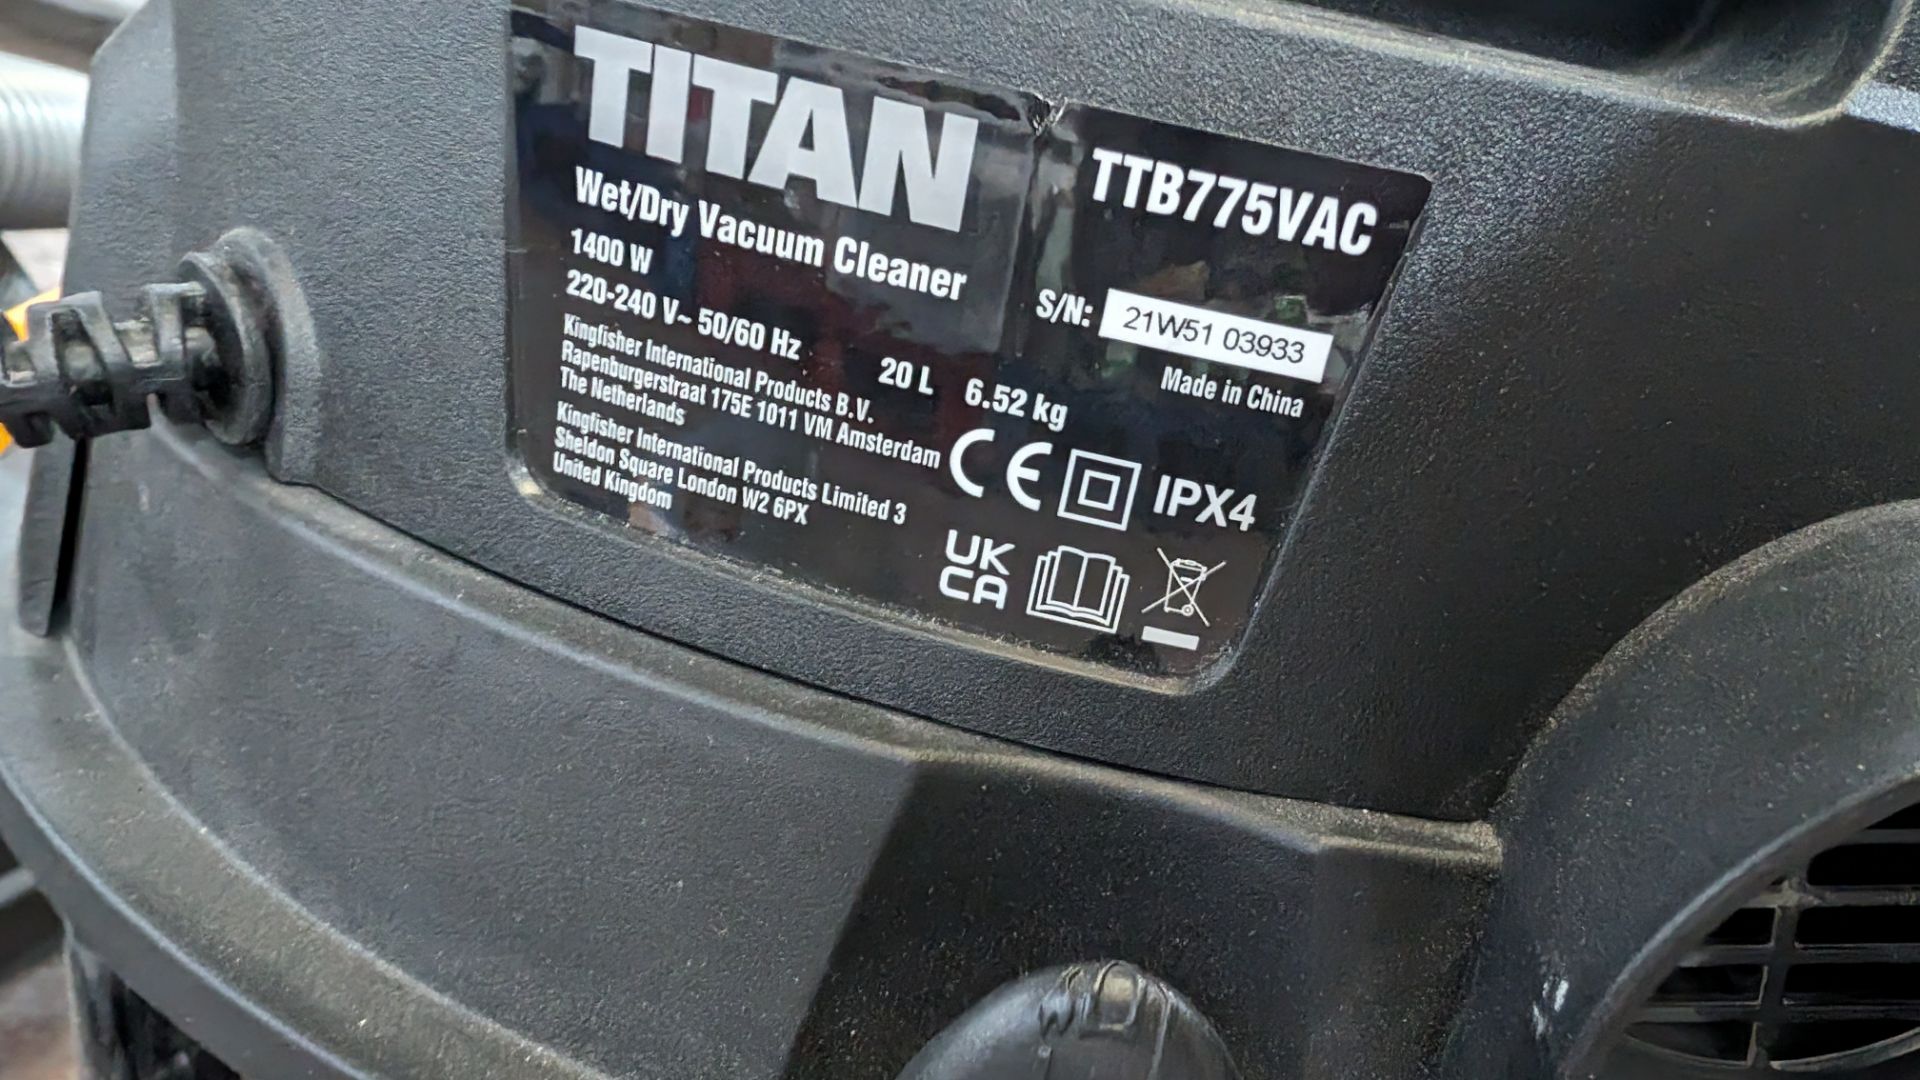 Titan TTB775VAC wet and dry 1400w vacuum cleaner - Image 7 of 8